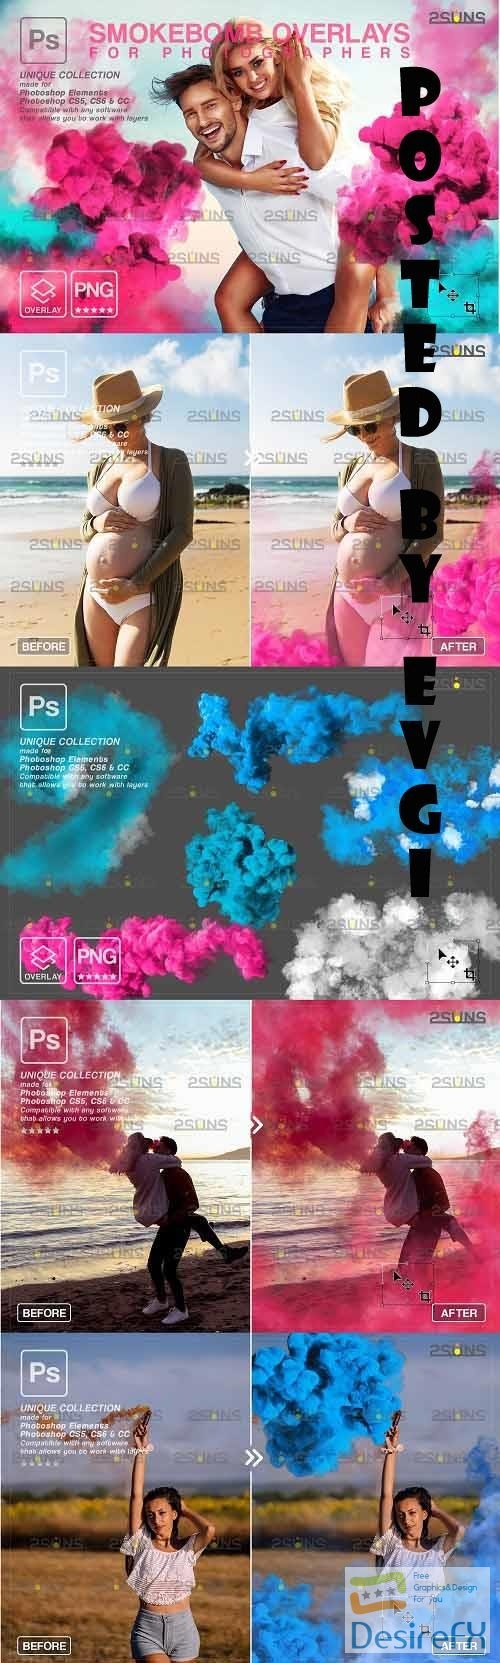 Gender reveal smoke photoshop overlay & Pink smoke bomb - 1612660